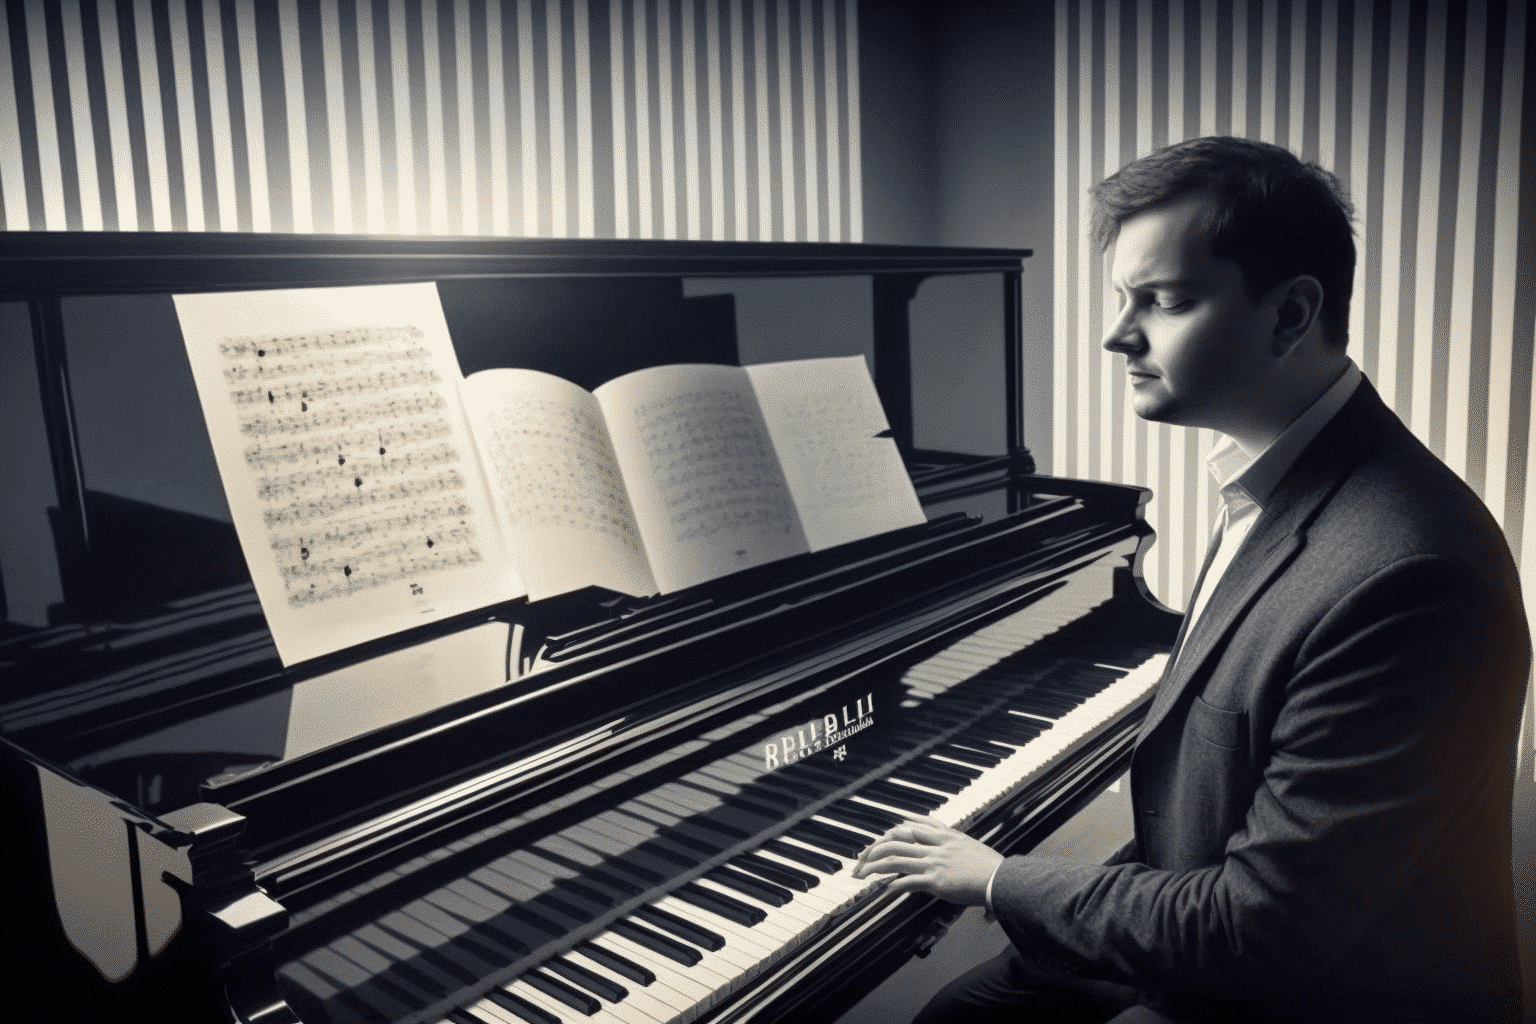 ukrainian-pianist-pursues-cultural-triumph-at-swiss-competition